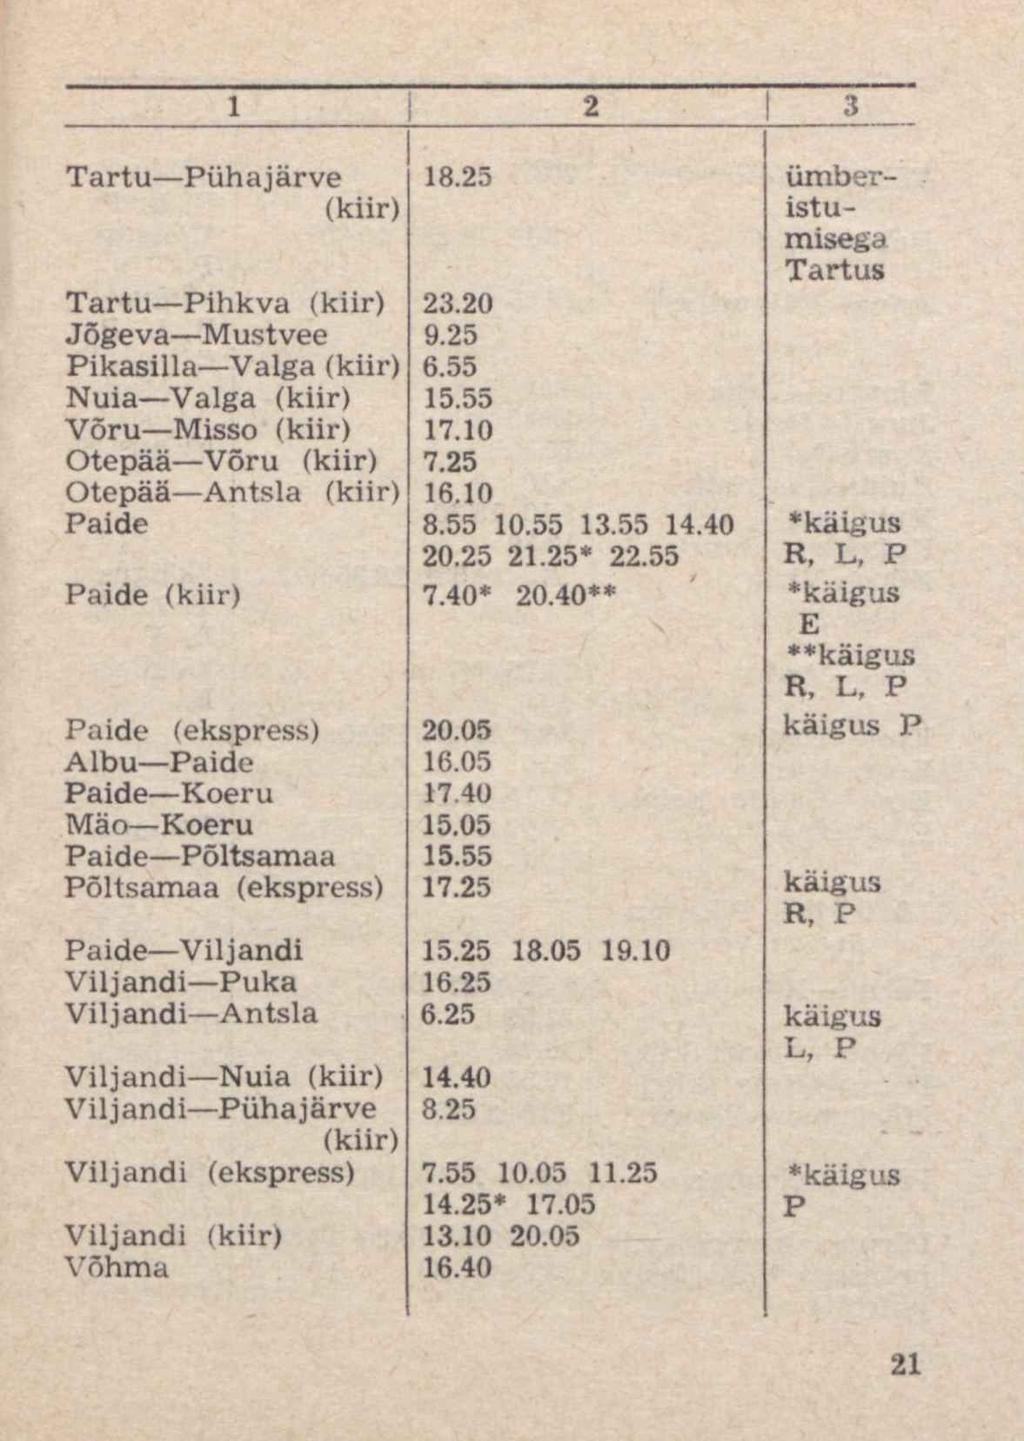 1 2 3 Tartu Pühajärve 18.25 ümber- (kiir) istumisega Tartus Tartu Pihkva (kiir) 23.20 Jõgeva Mustvee 9.25 Pikasilla Valga (kiir) 6.55 Nuia Valga (kiir) 15.55 Võru Misso (kiir) 17.